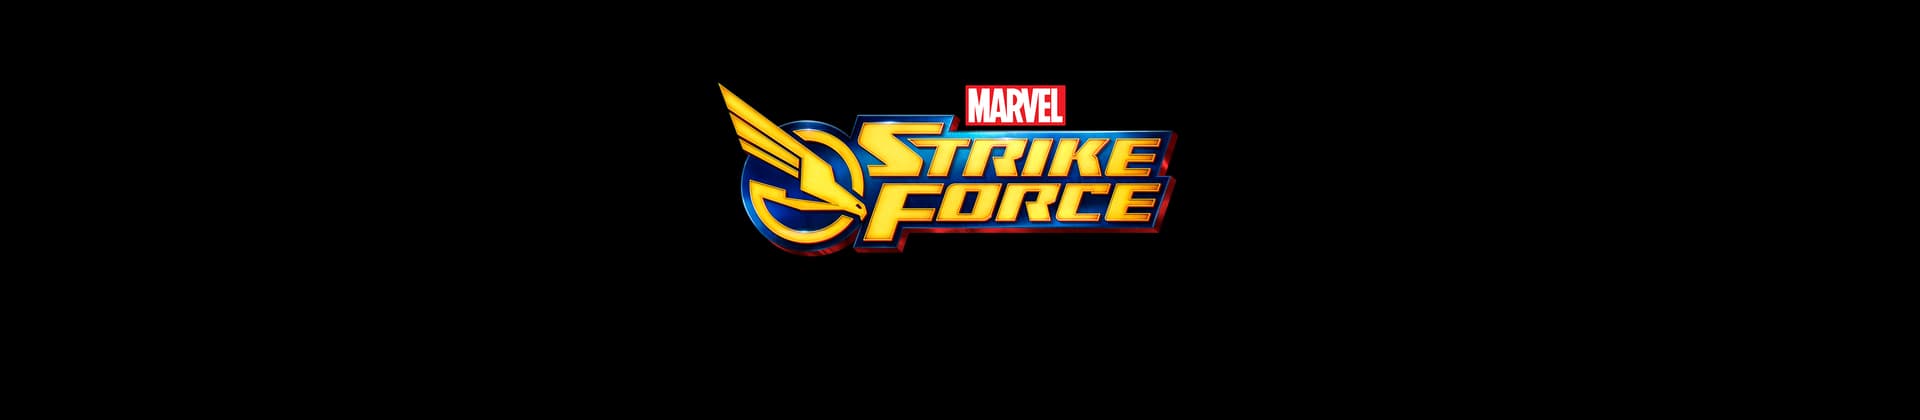 MARVEL Strike Force